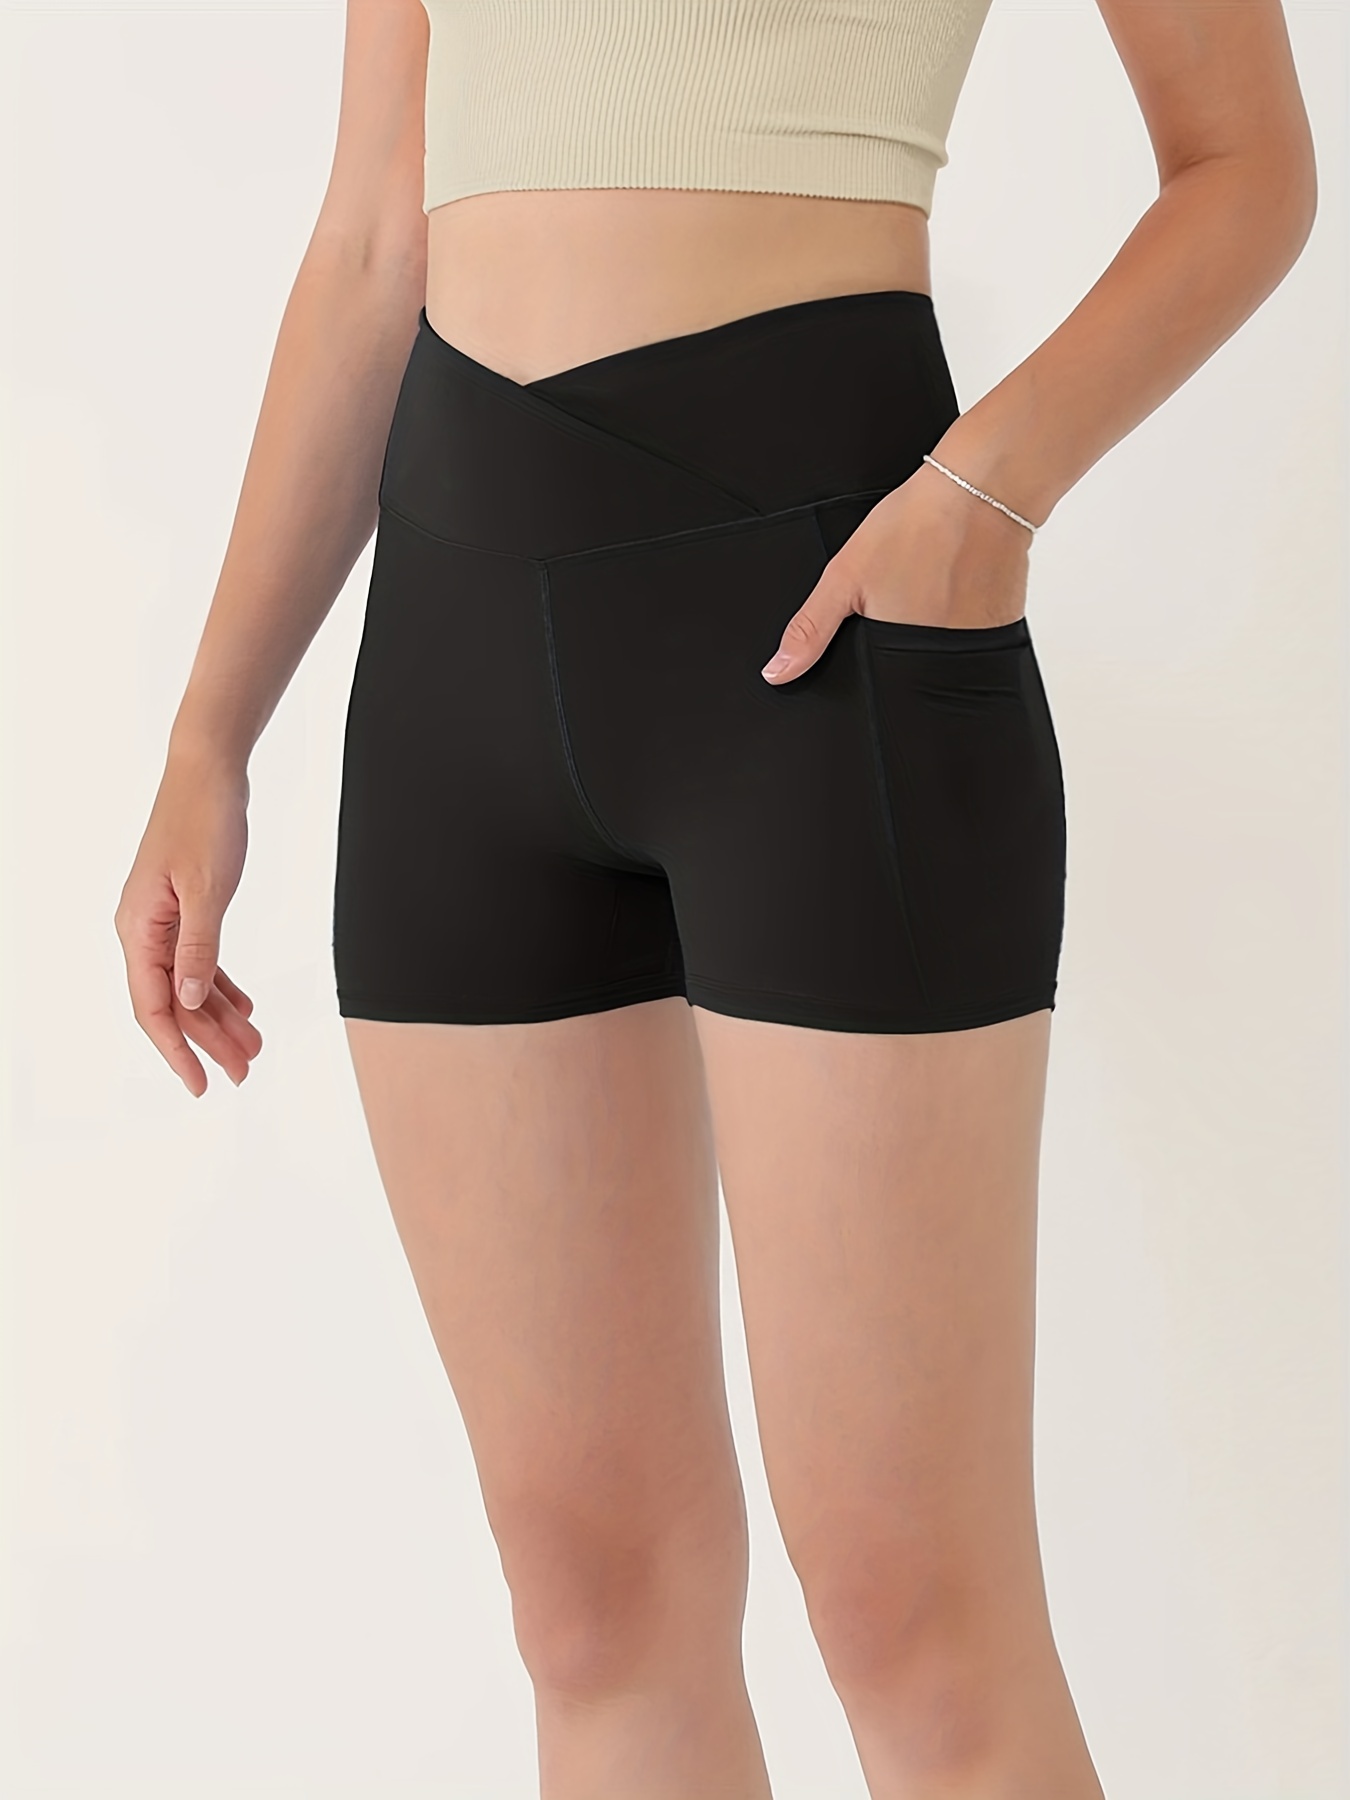 Skinny Biker Shorts, Pocket Casual Short Leggings For Summer & Spring,  Women's Clothing